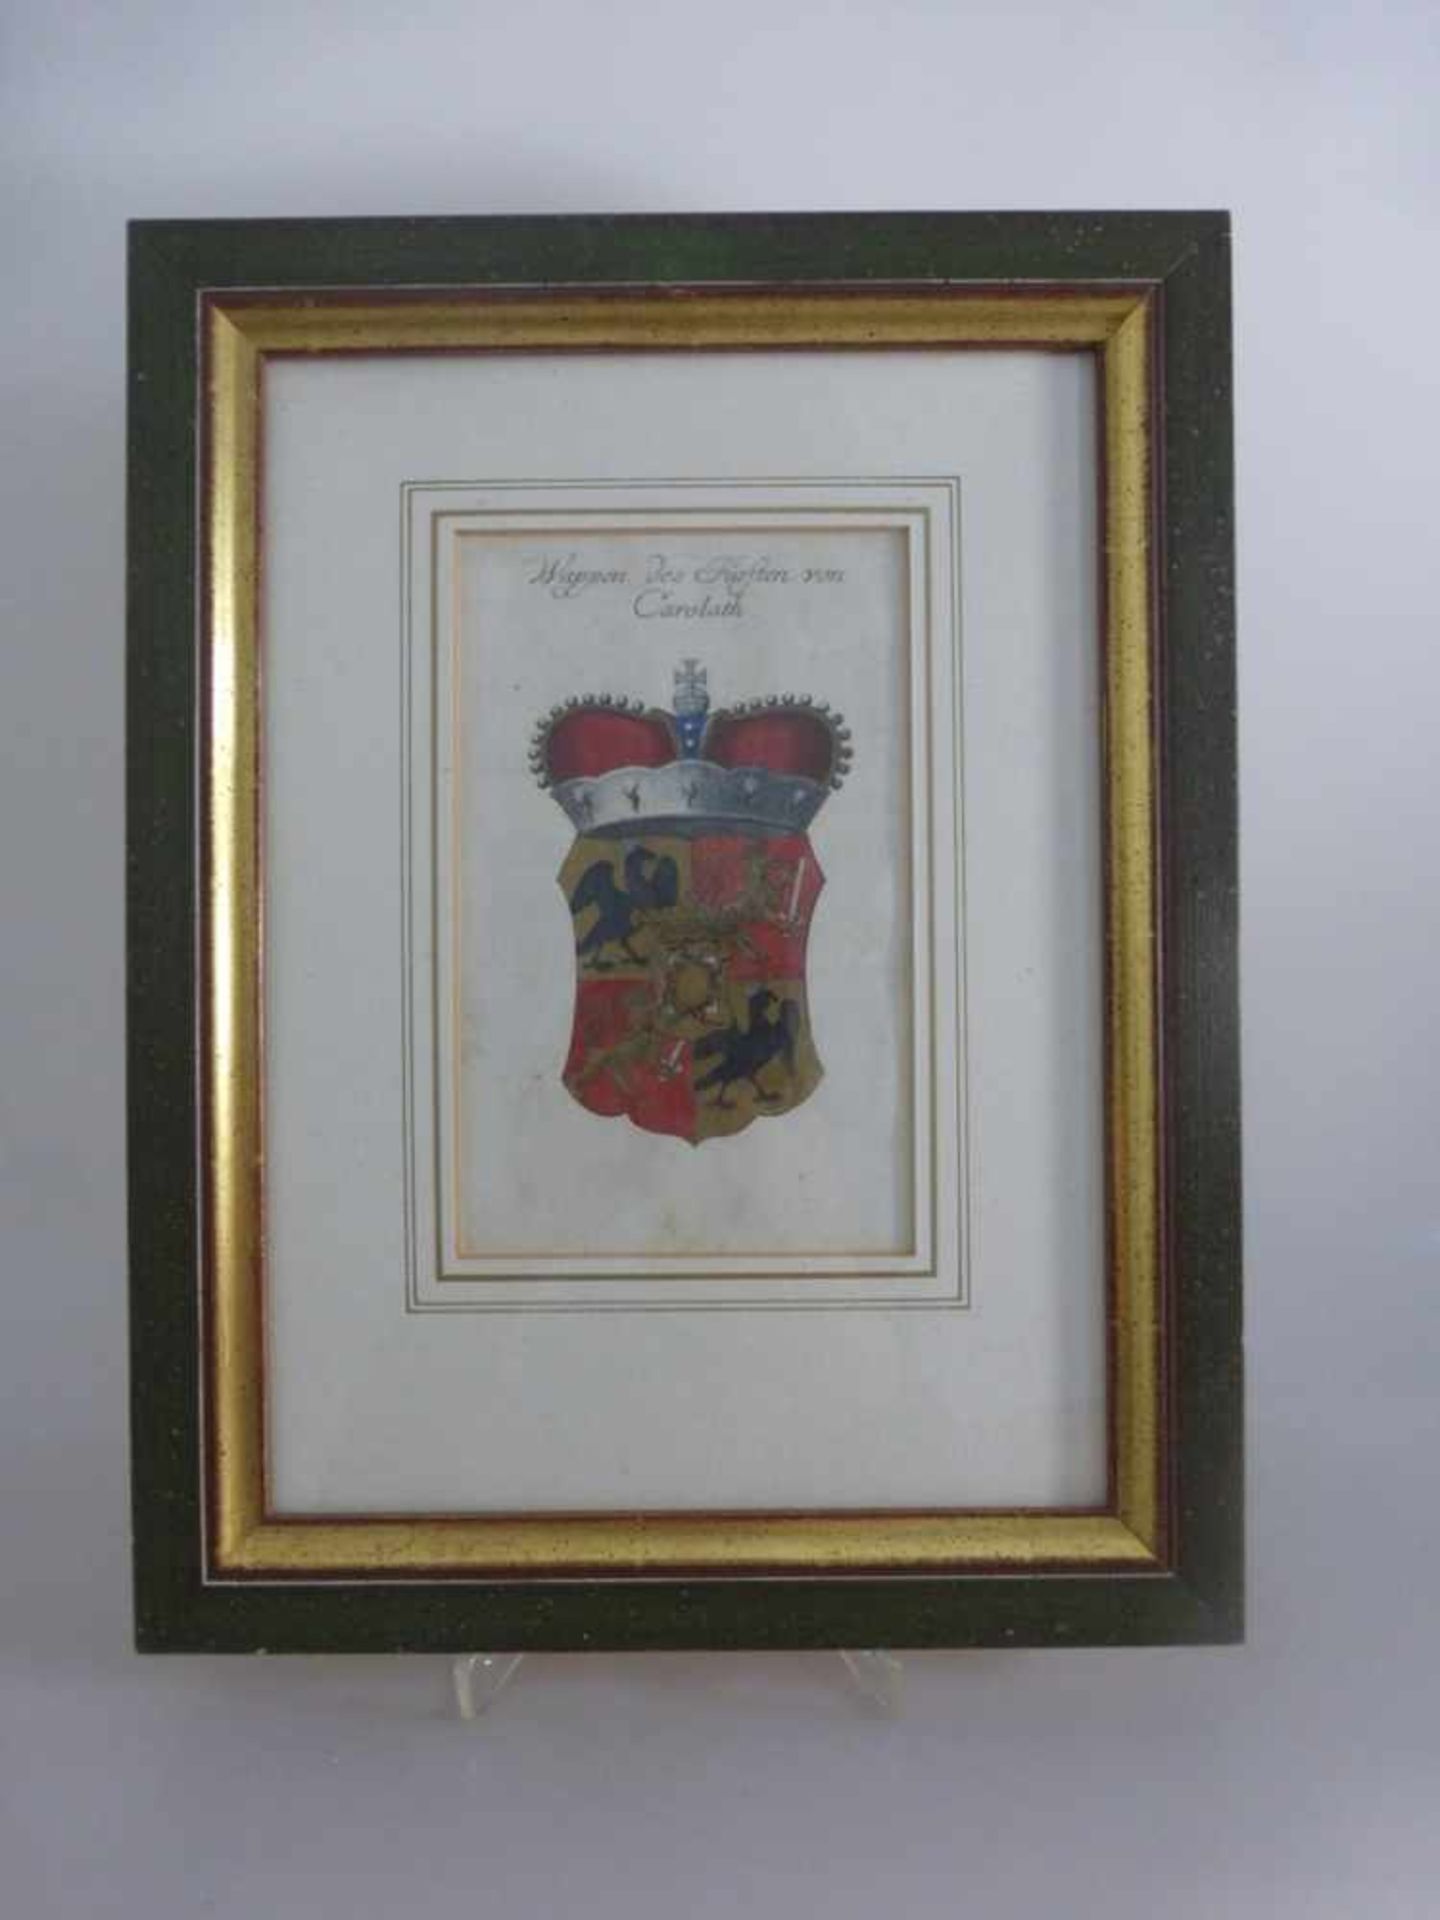 Kupferstich coloriert "Wappen des Fürsten von Carolath", u.PP i.R. 33cm x 25,5cm